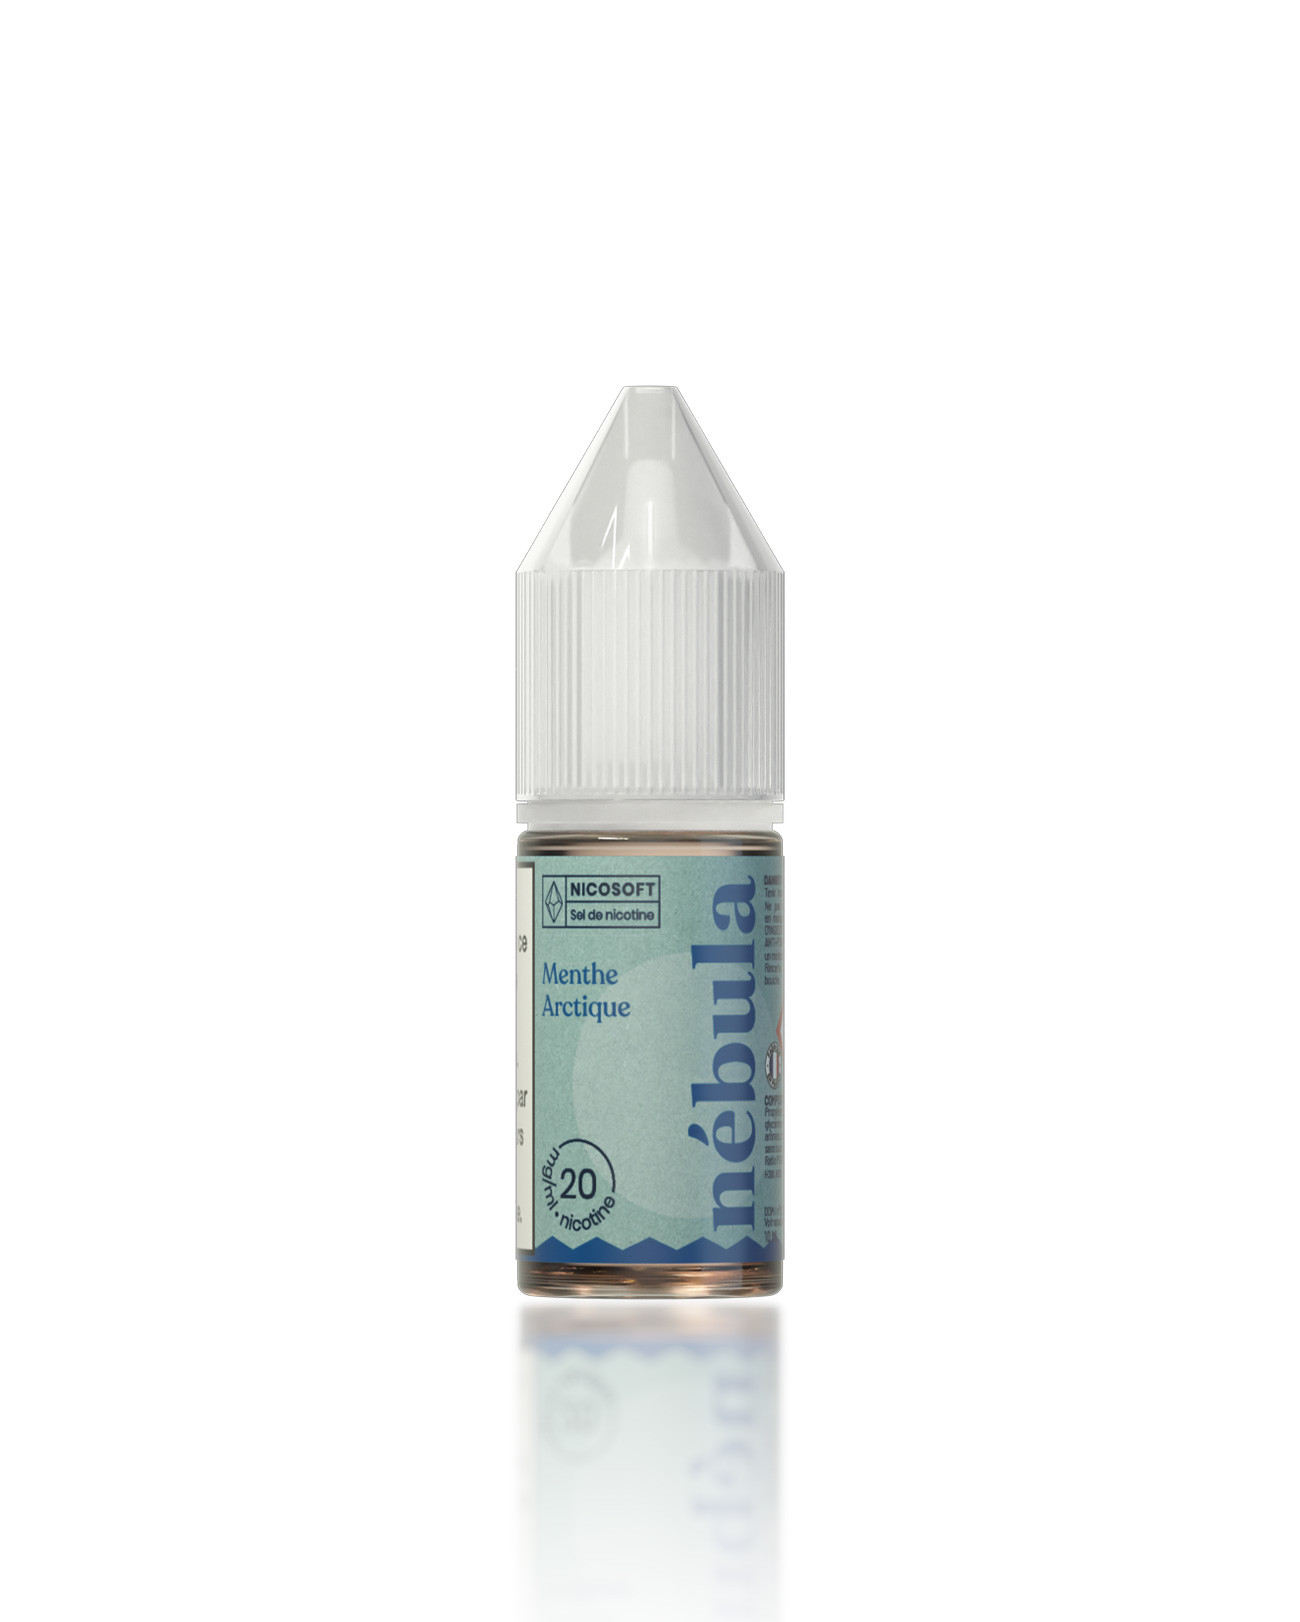 E-liquide menthe CRYOGÉNIE 60ml pour e-cigarette 